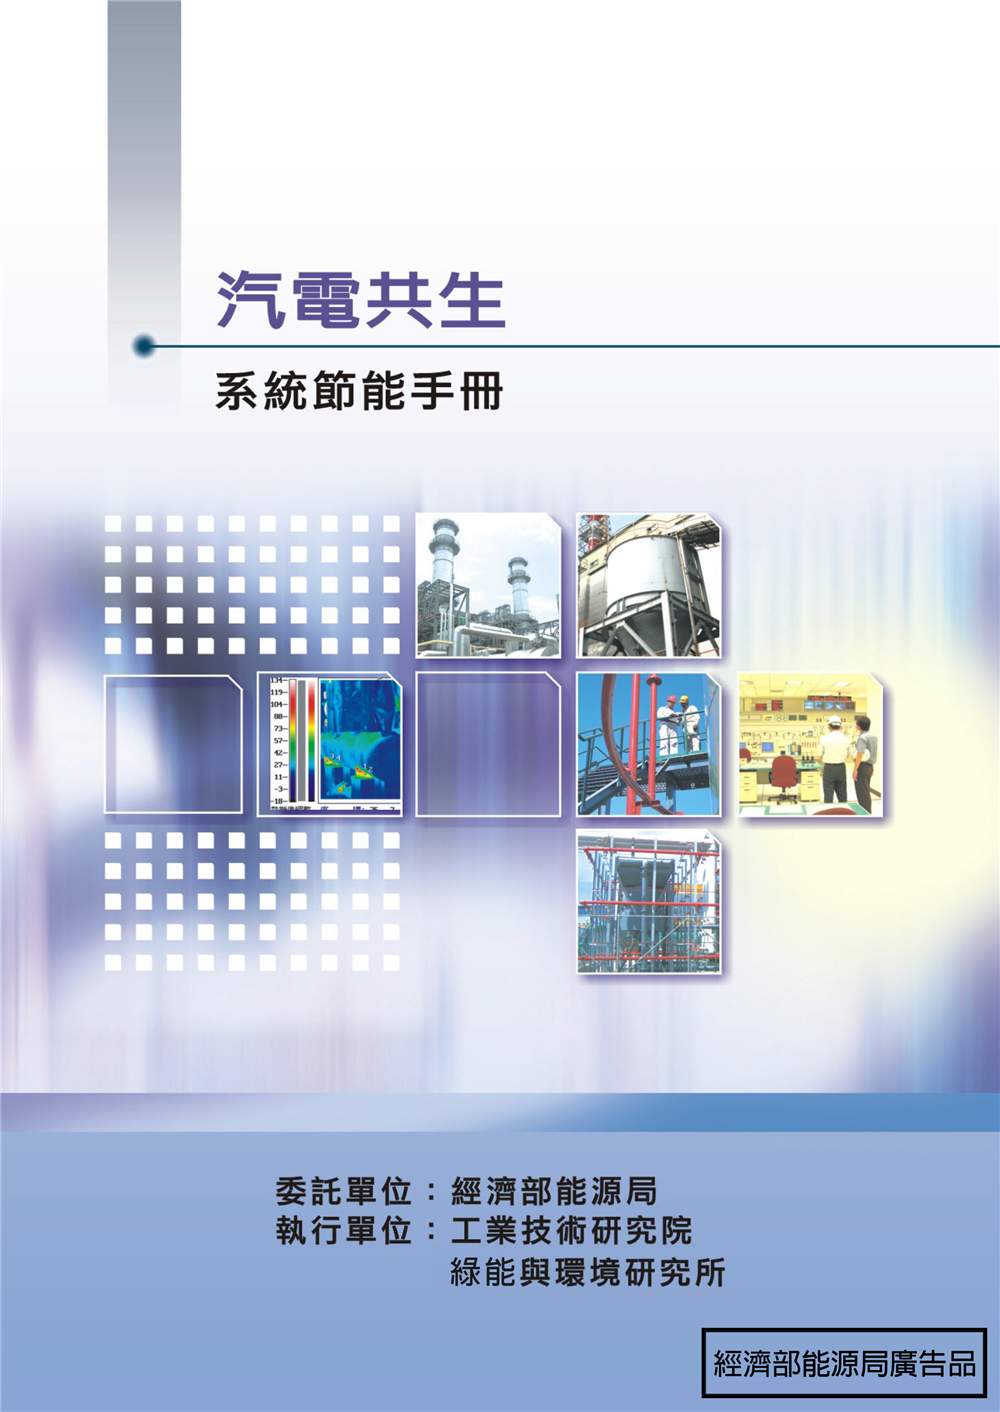 能源查核與節約能源案例手冊-汽電共生系統 的封面